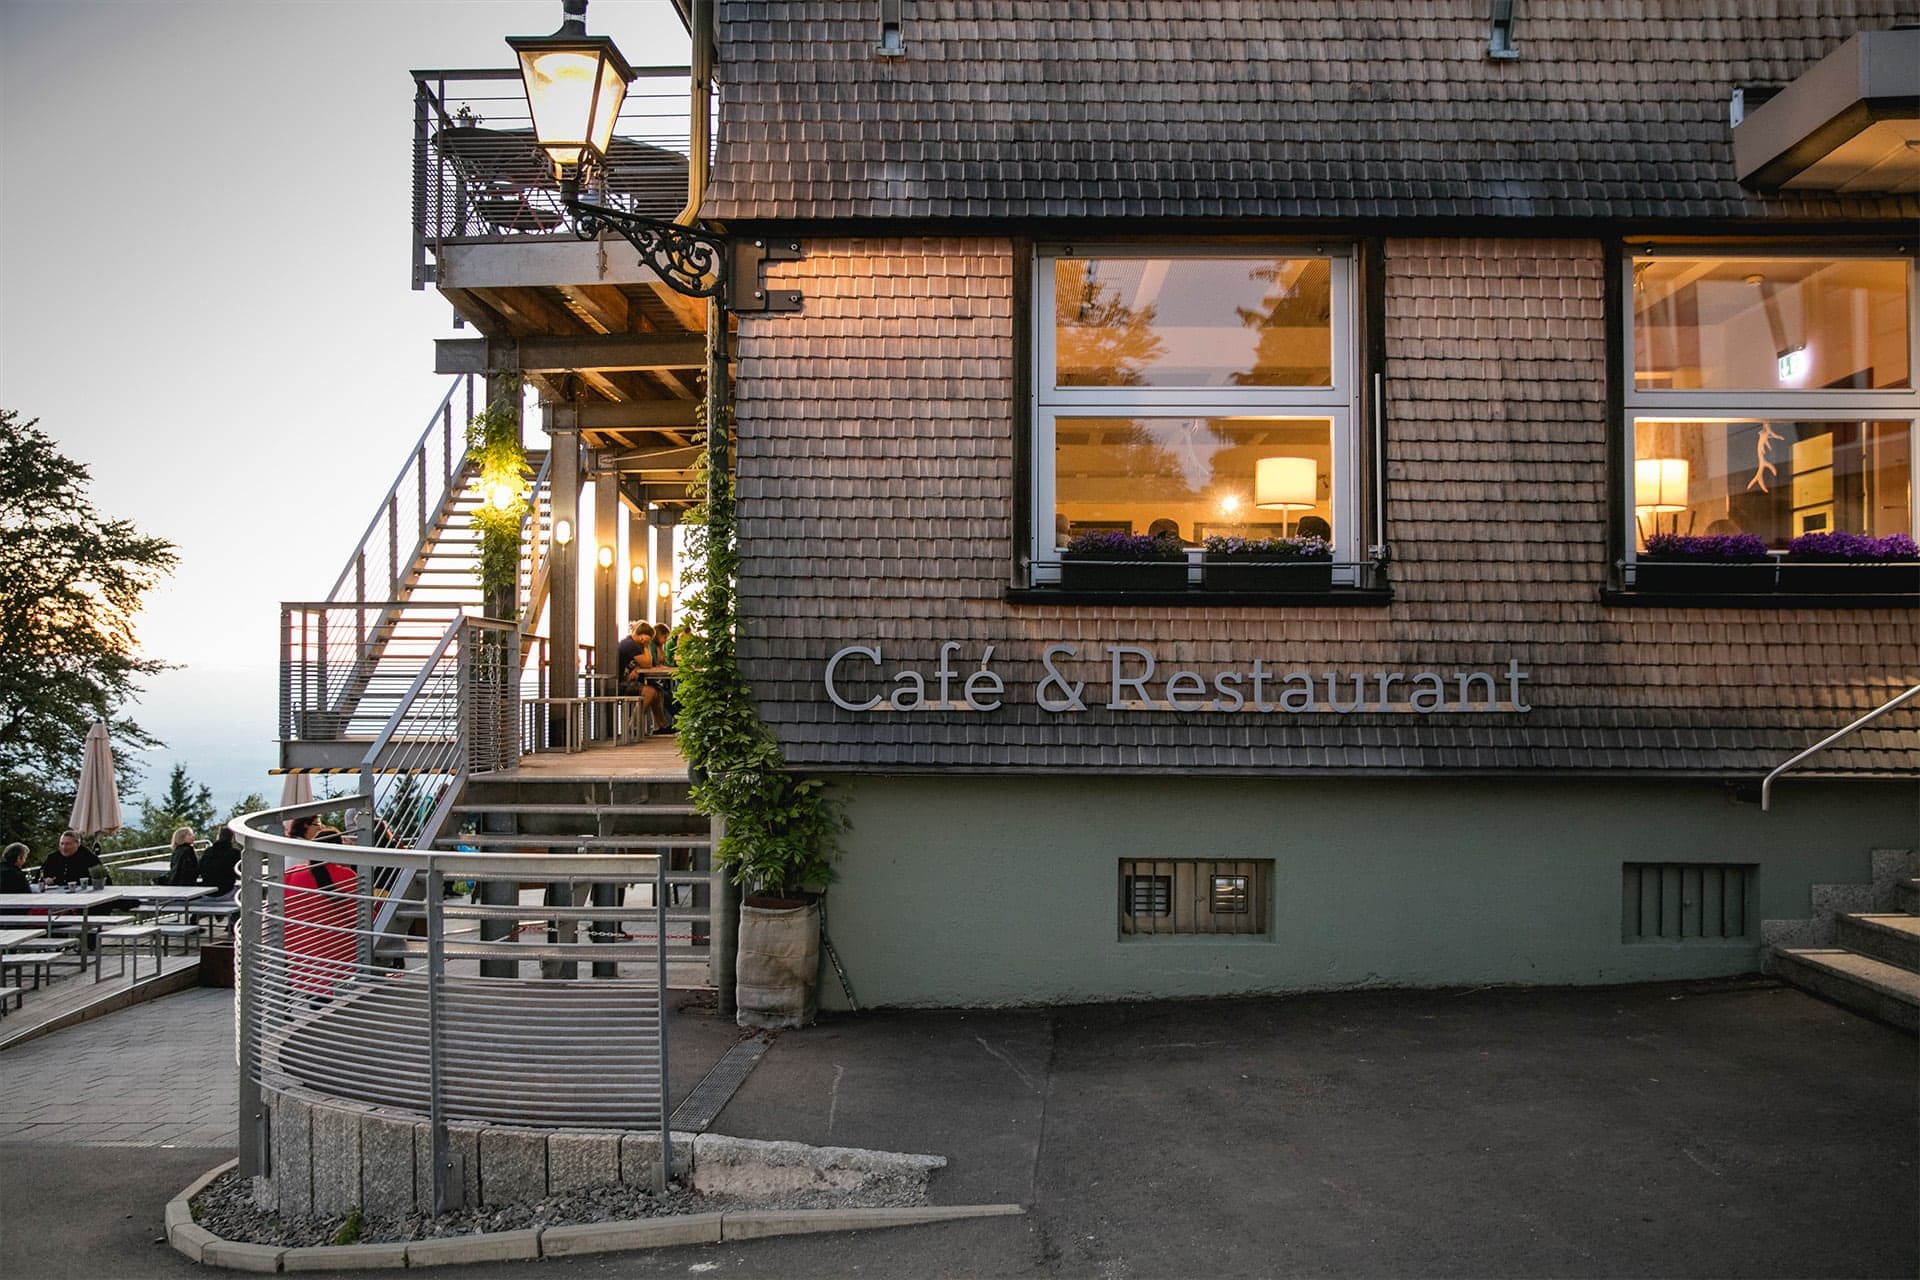 Cafe & Restaurant die Bergstation